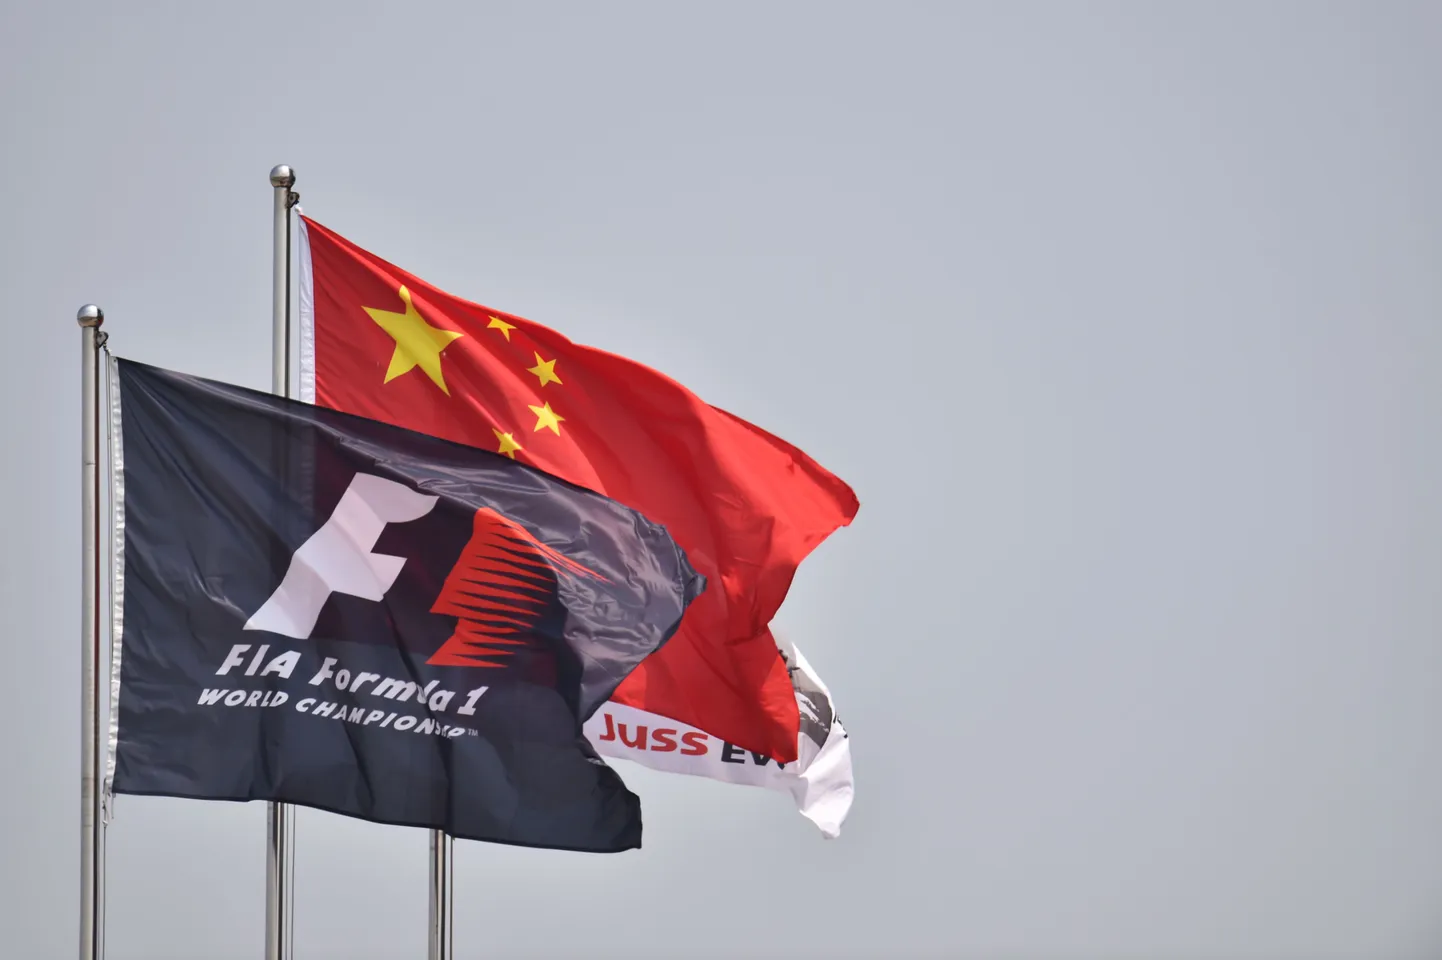 Vormel-1 Hiina etapp toimus esimest korda 2004. aastal.